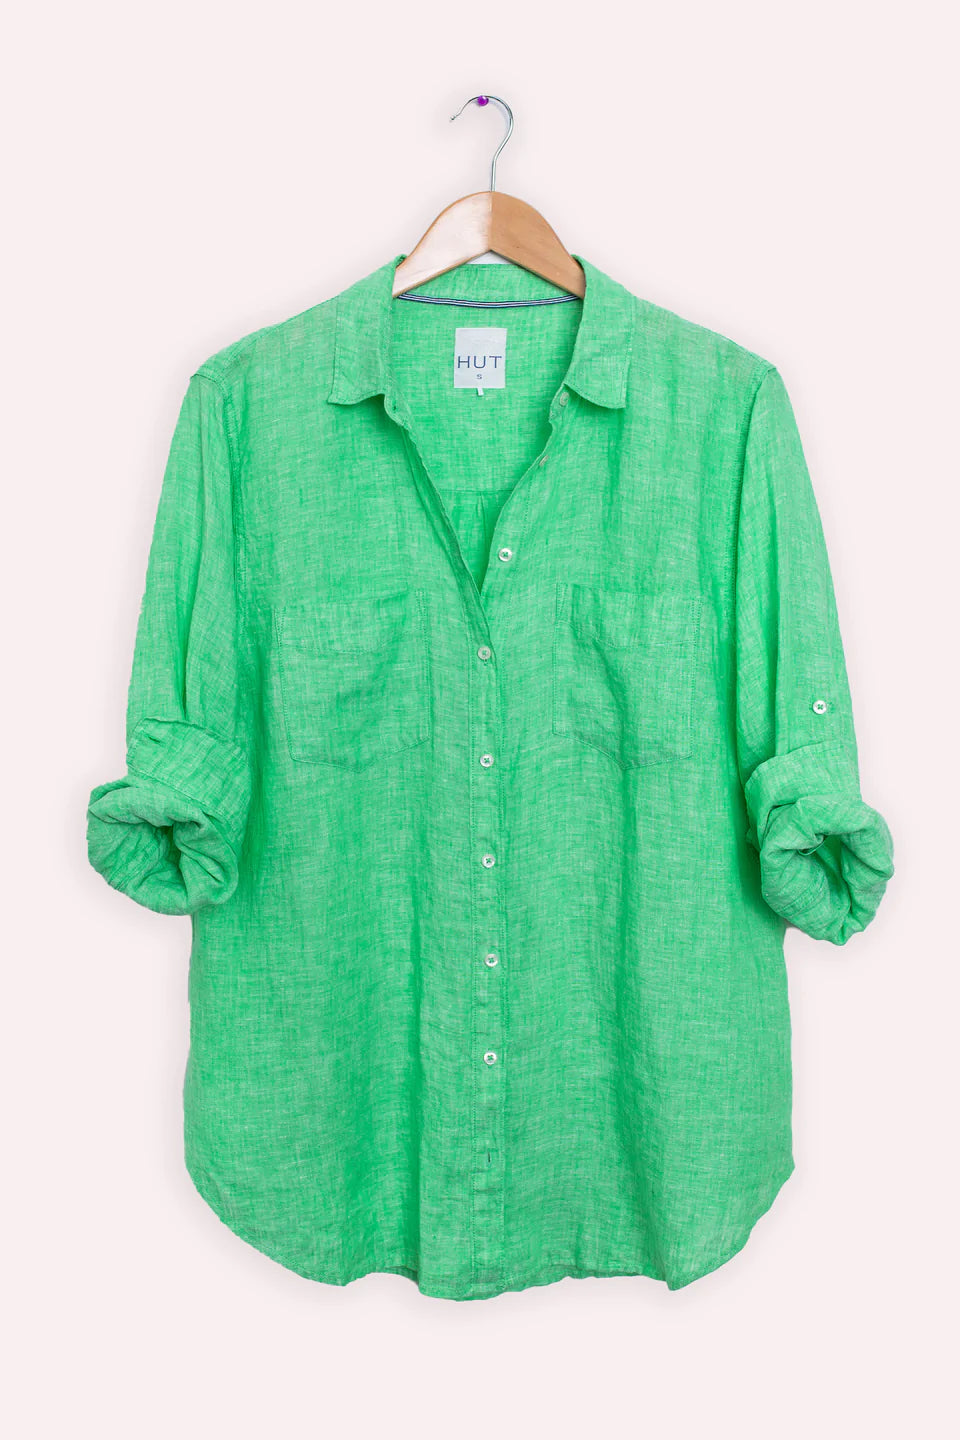 Hut Boyfriend Linen Shirt - Soft Green Chambray